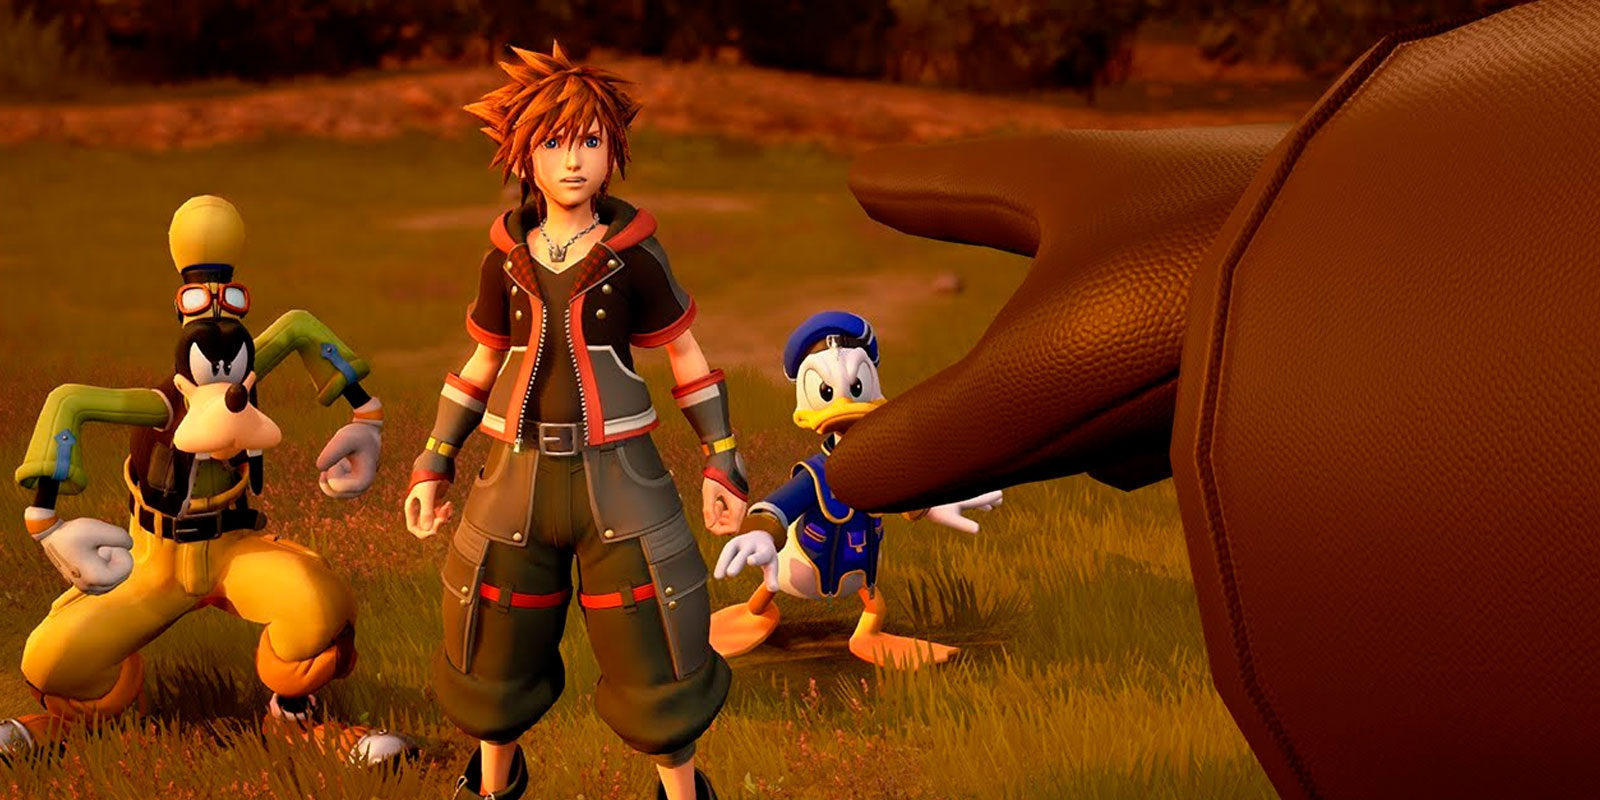 Square Enix revelaría la fecha de lanzamiento de 'Kingdom Hearts III' en febrero